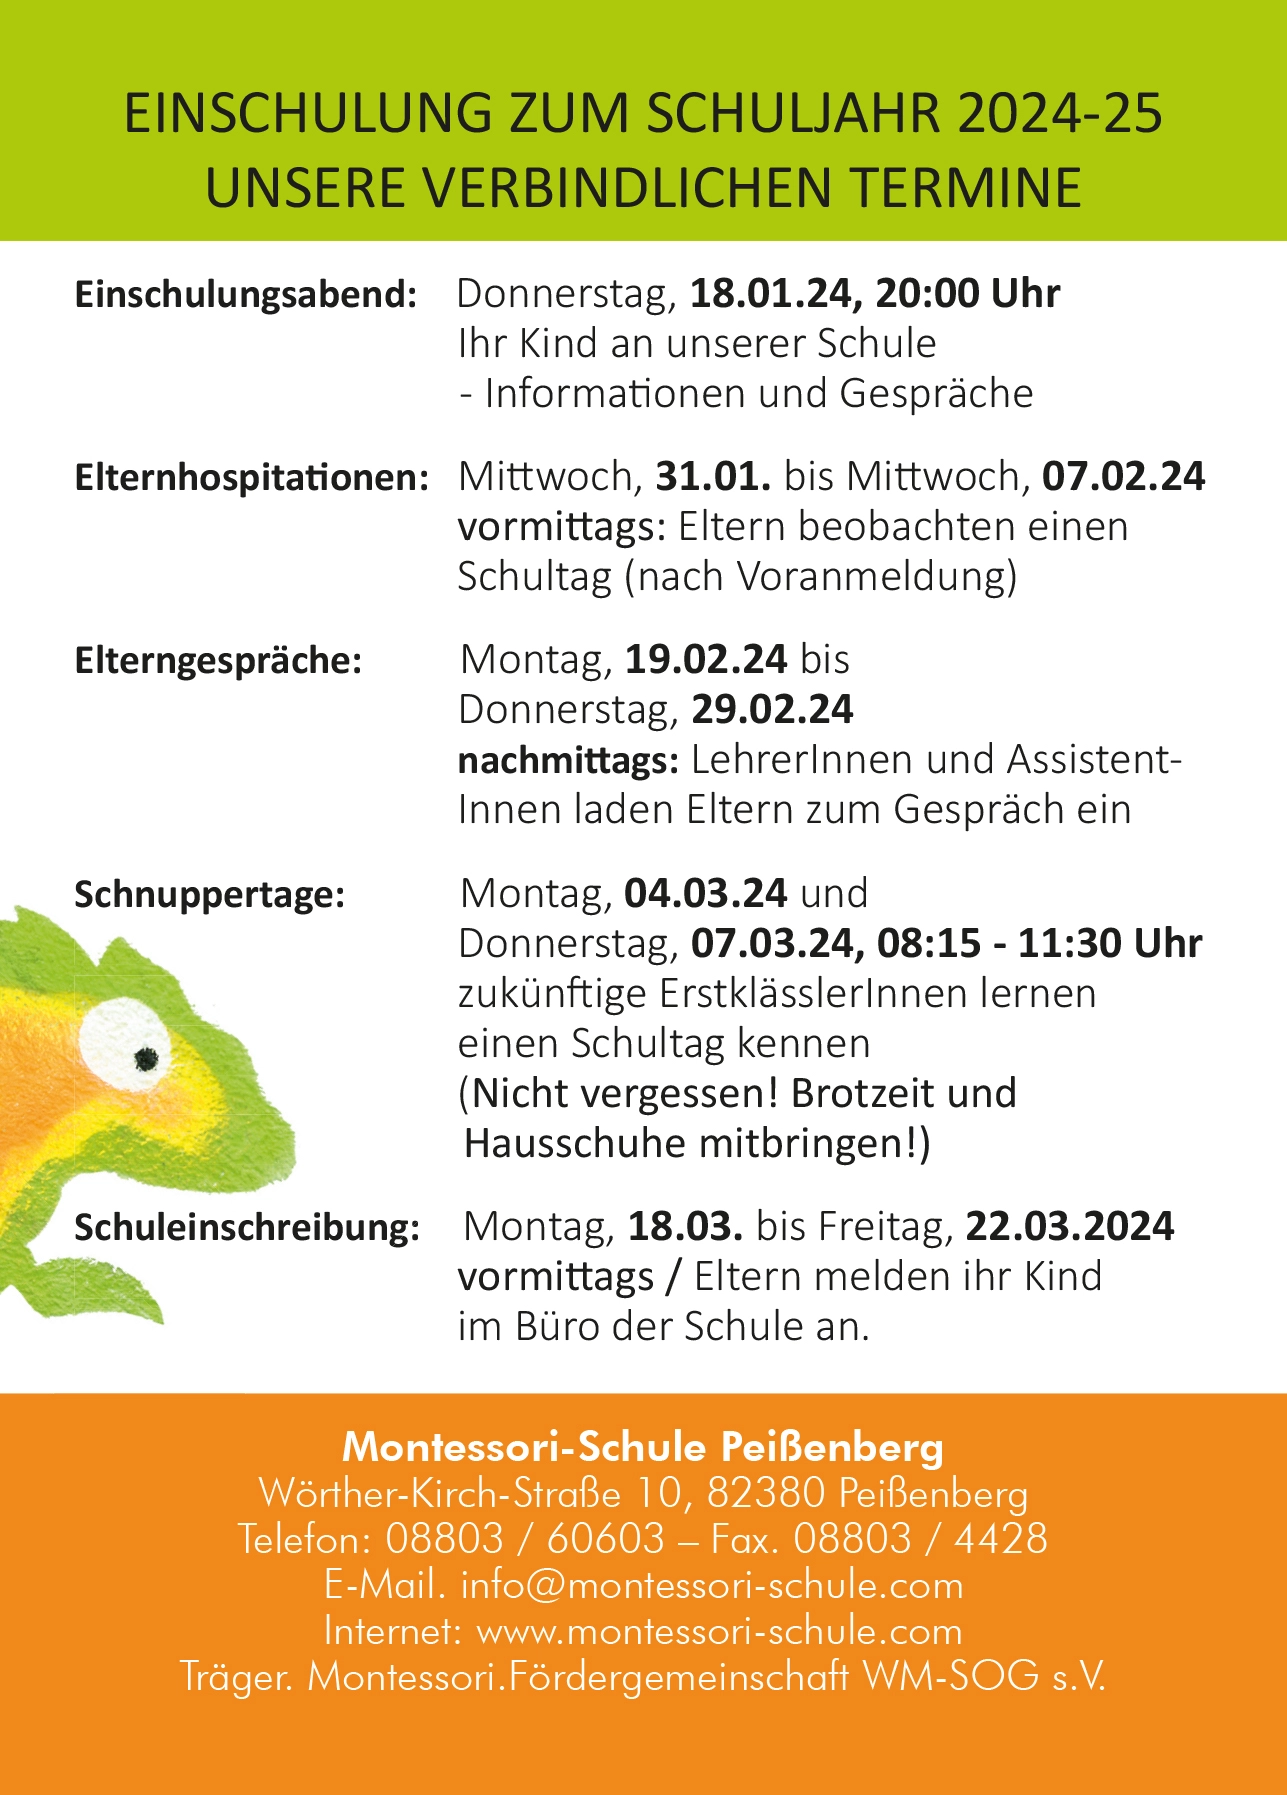 Einschulungstermine 2024/2025 der Montessori Schule Peißenberg